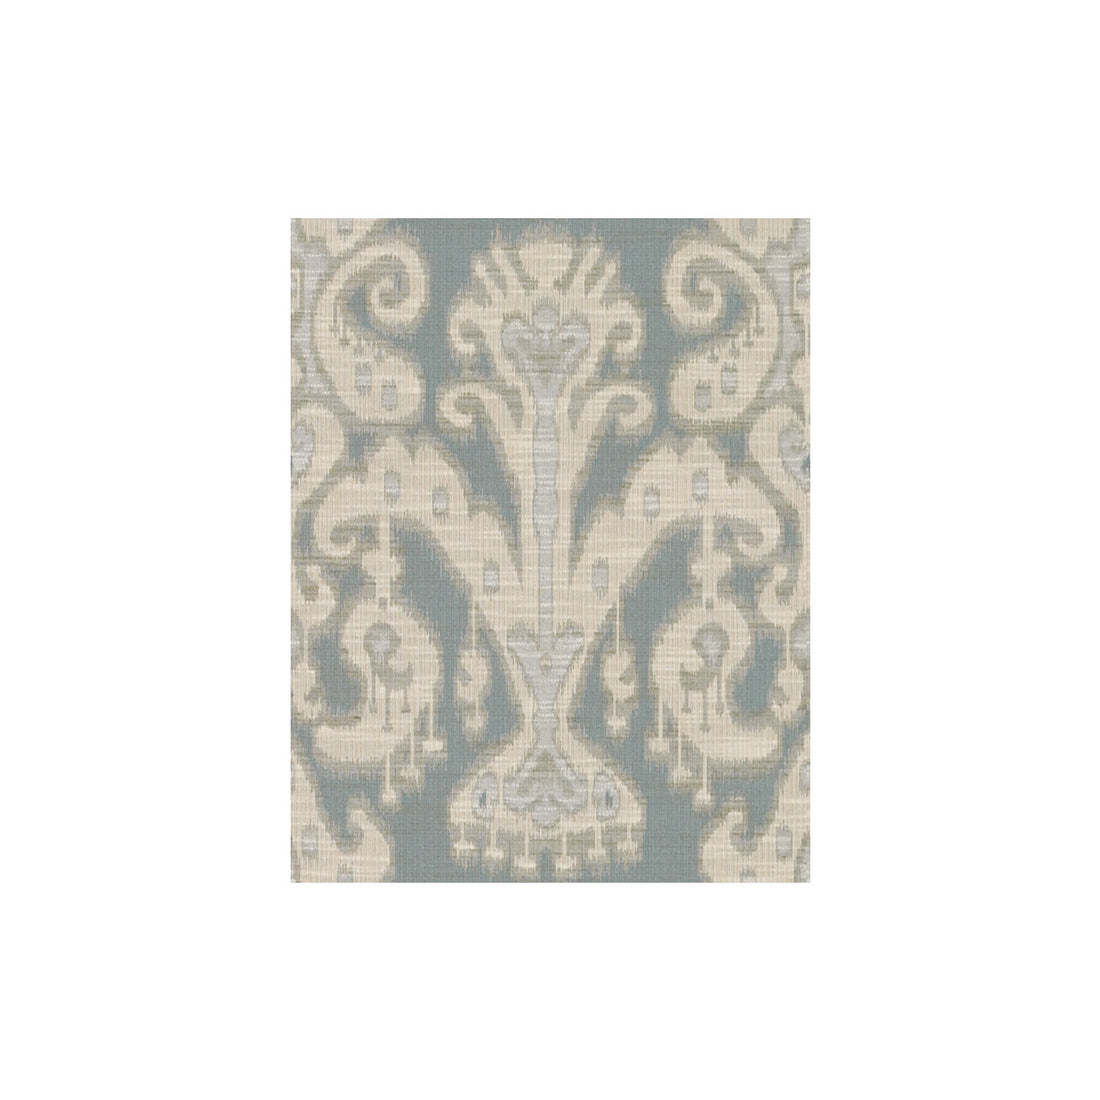 Kravet Design fabric in 30780-1516 color - pattern 30780.1516.0 - by Kravet Design